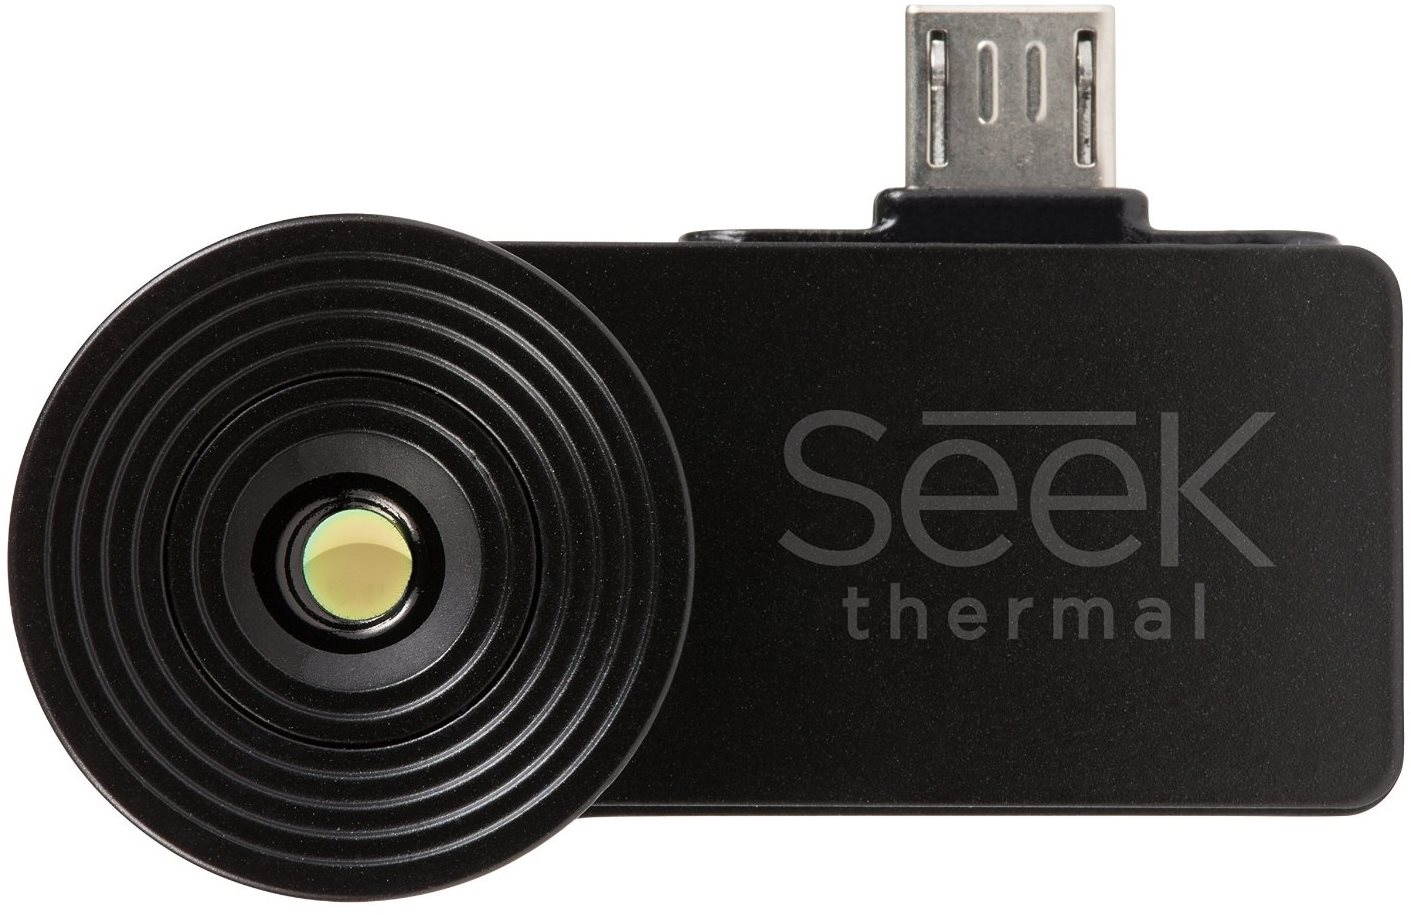 Seek Thermal Compact hőkamera modul Android eszközhöz